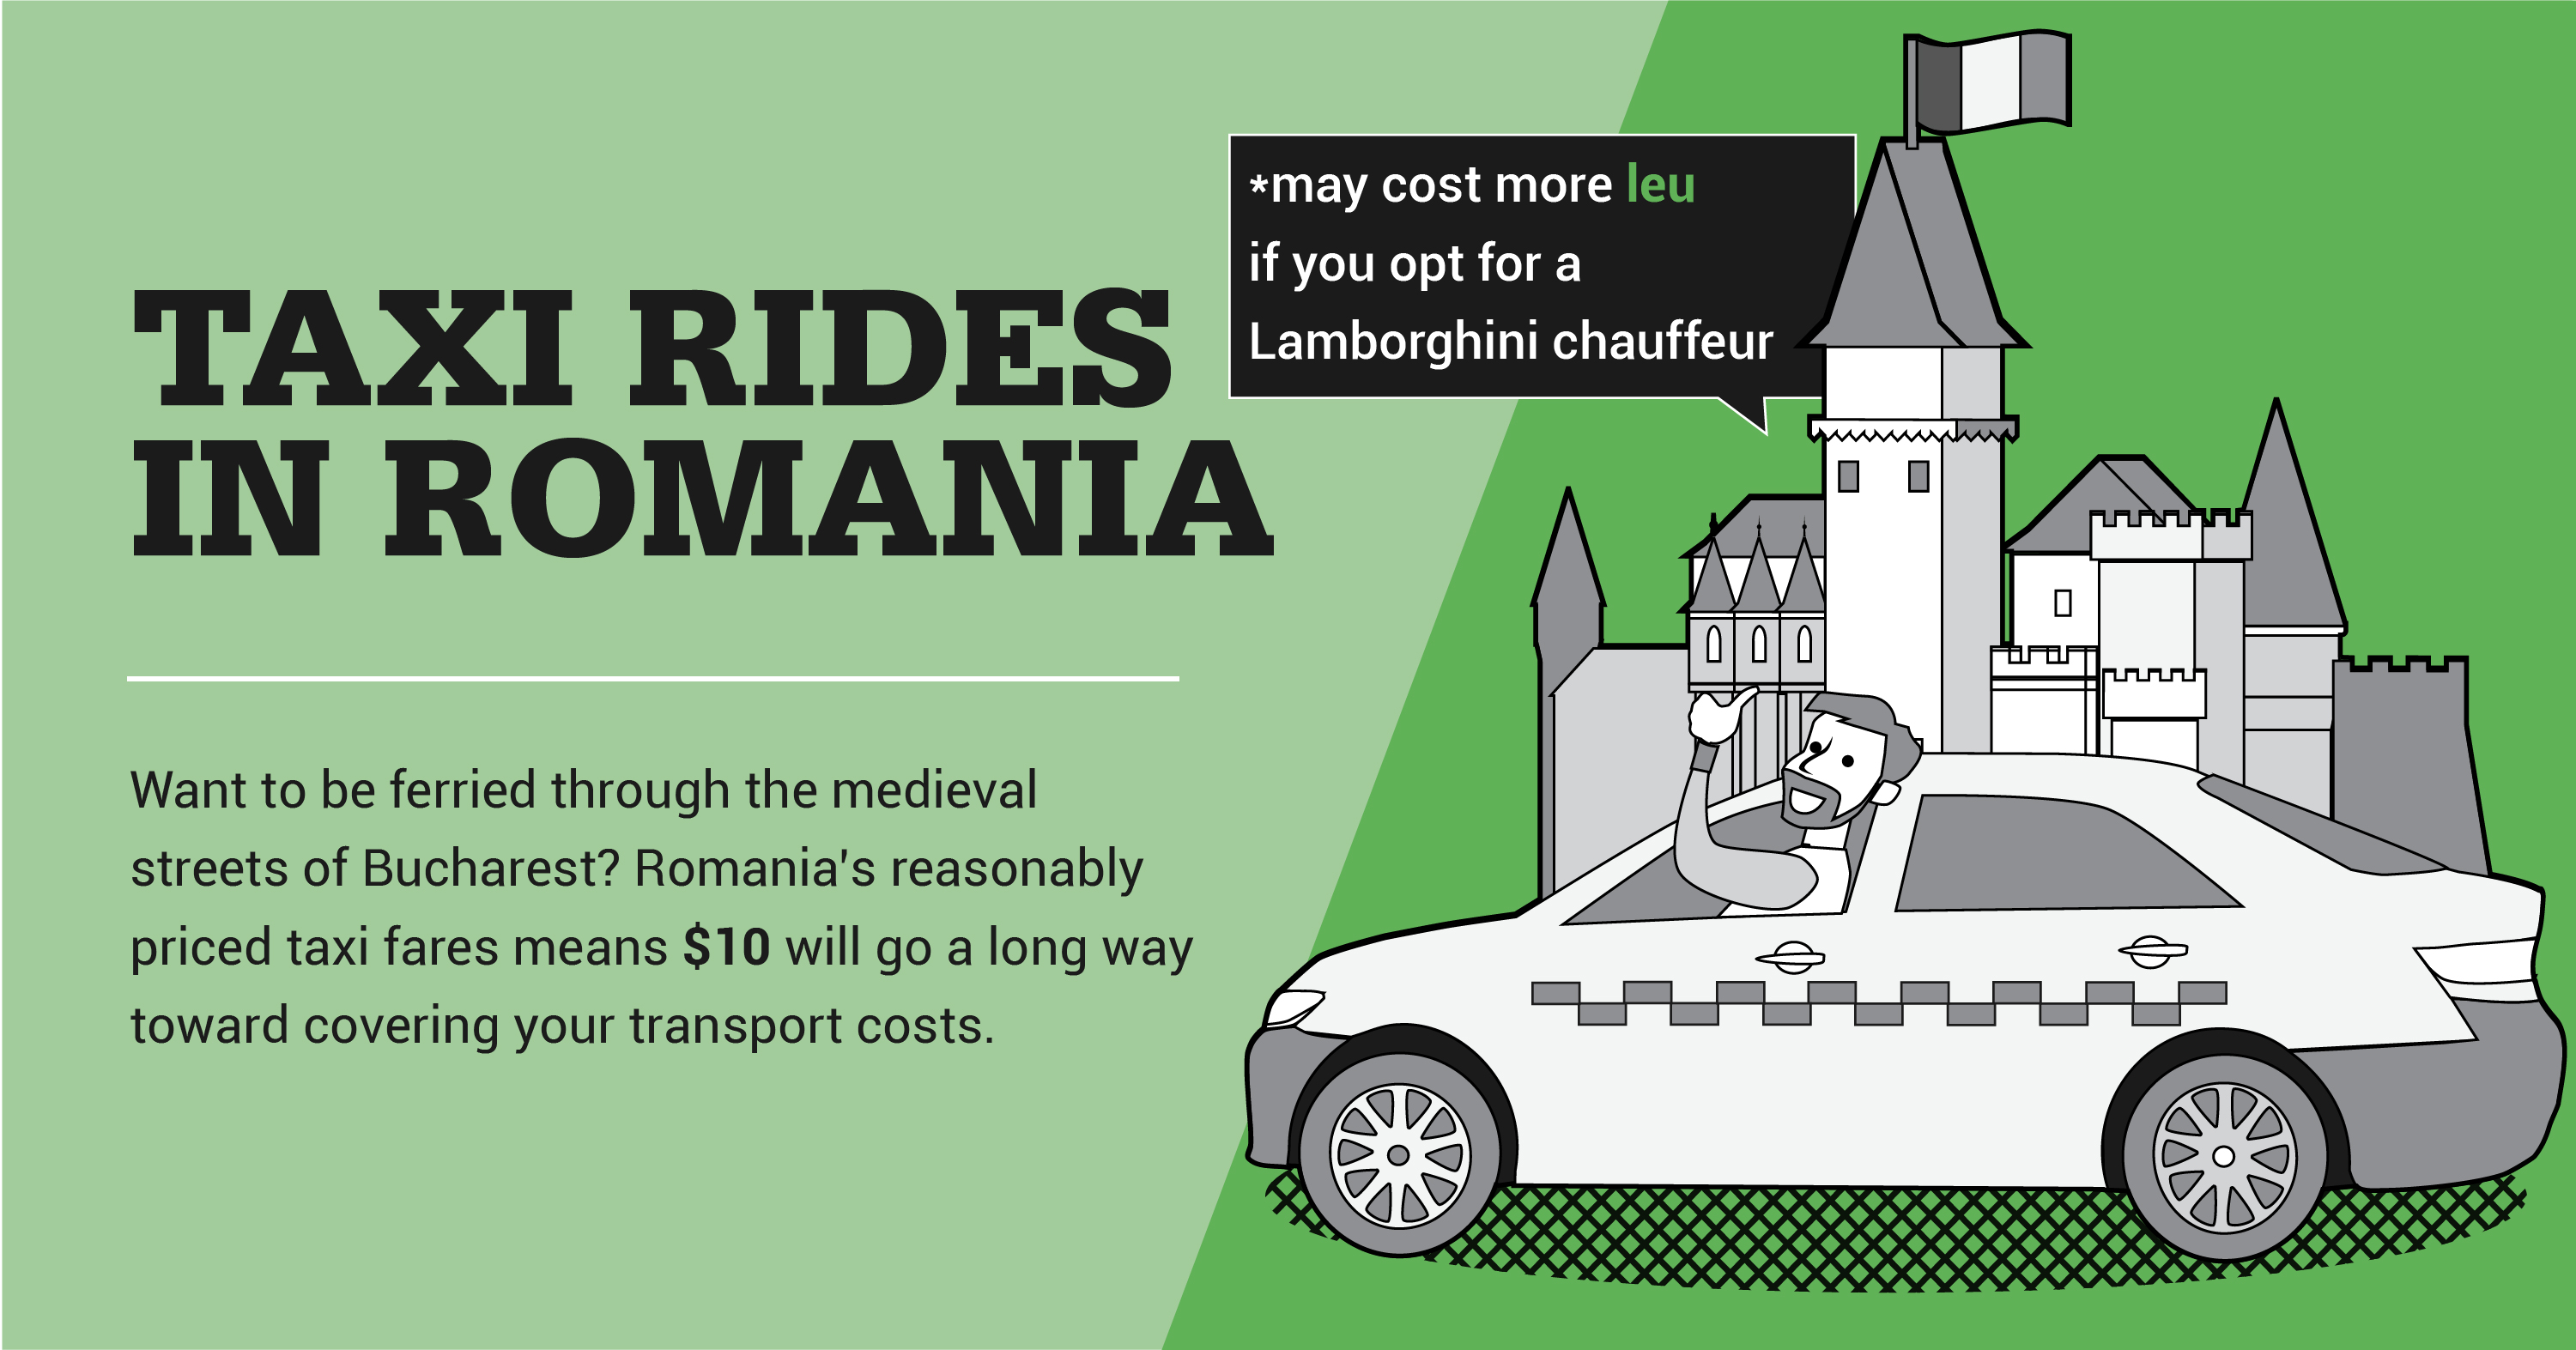 Taxi rides in Romania 